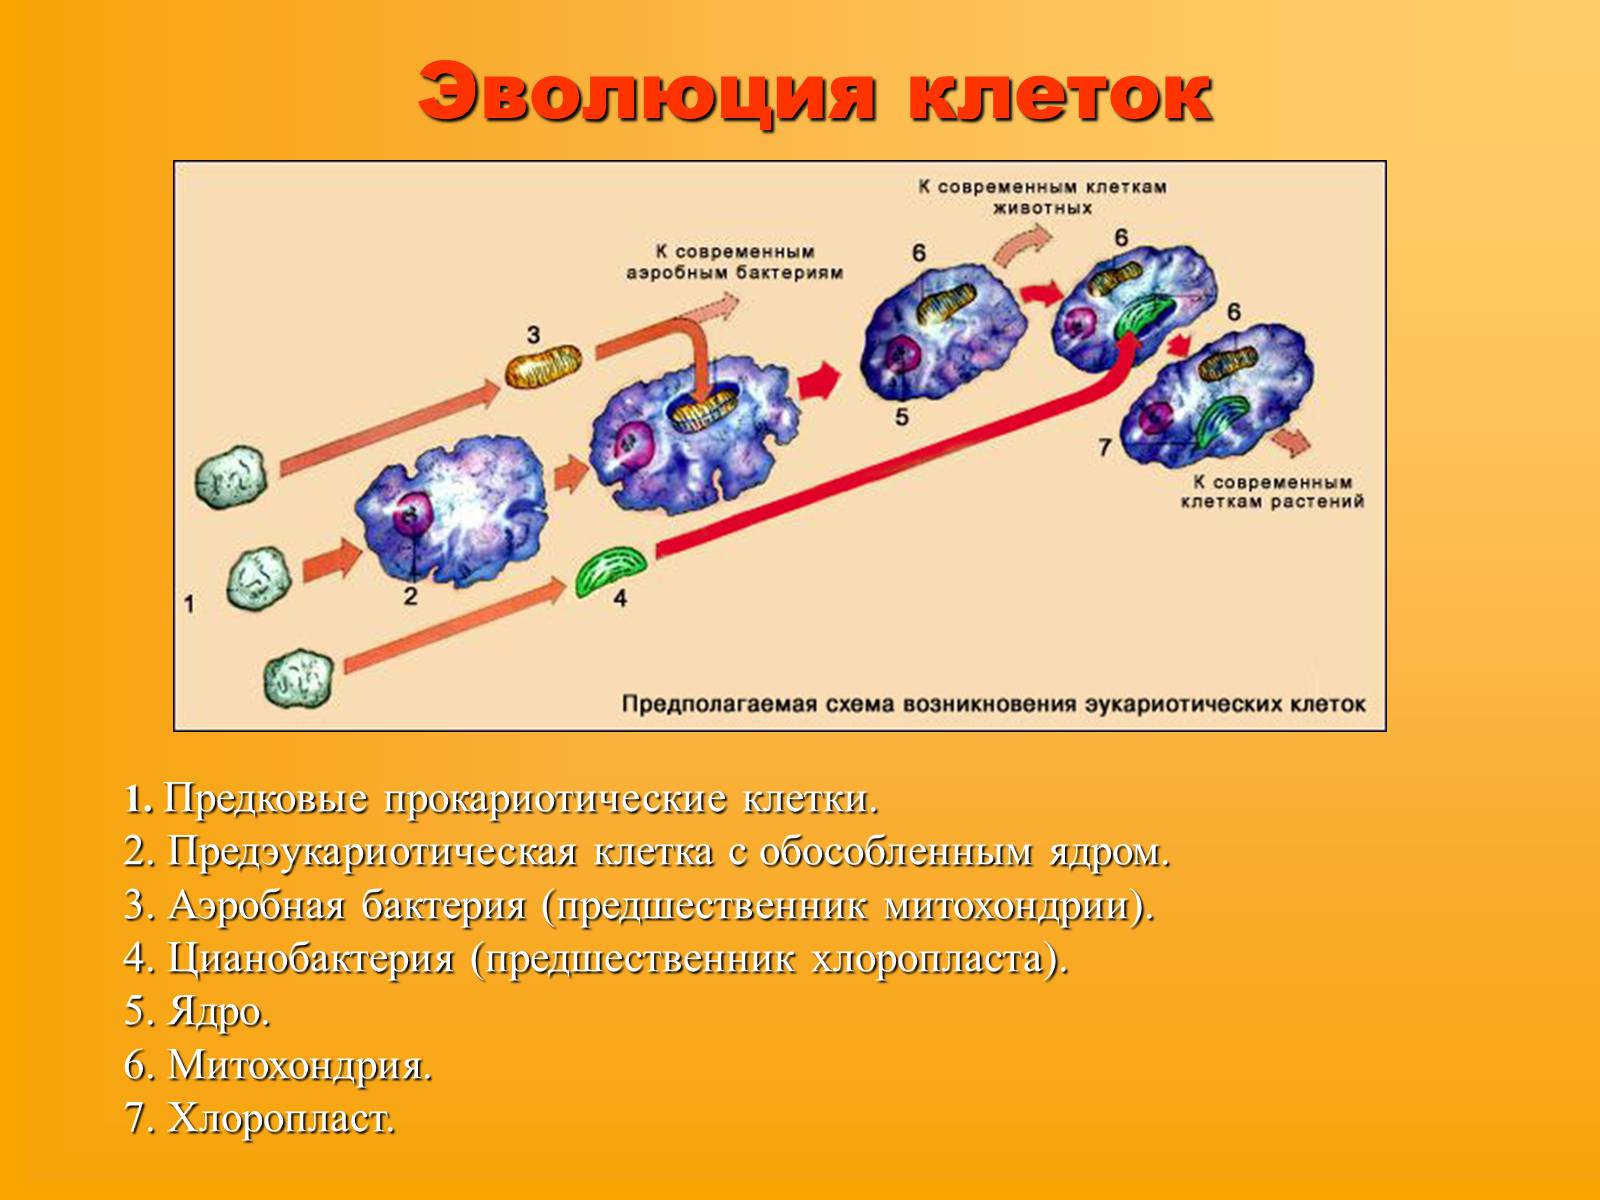 Появление живой клетки. Эволюция эукариотической клетки. Схема эволюции эукариотических клеток. Эволюция клеток возникновение эукариот схема. Какие основные этапы эволюции клетки эукариот.